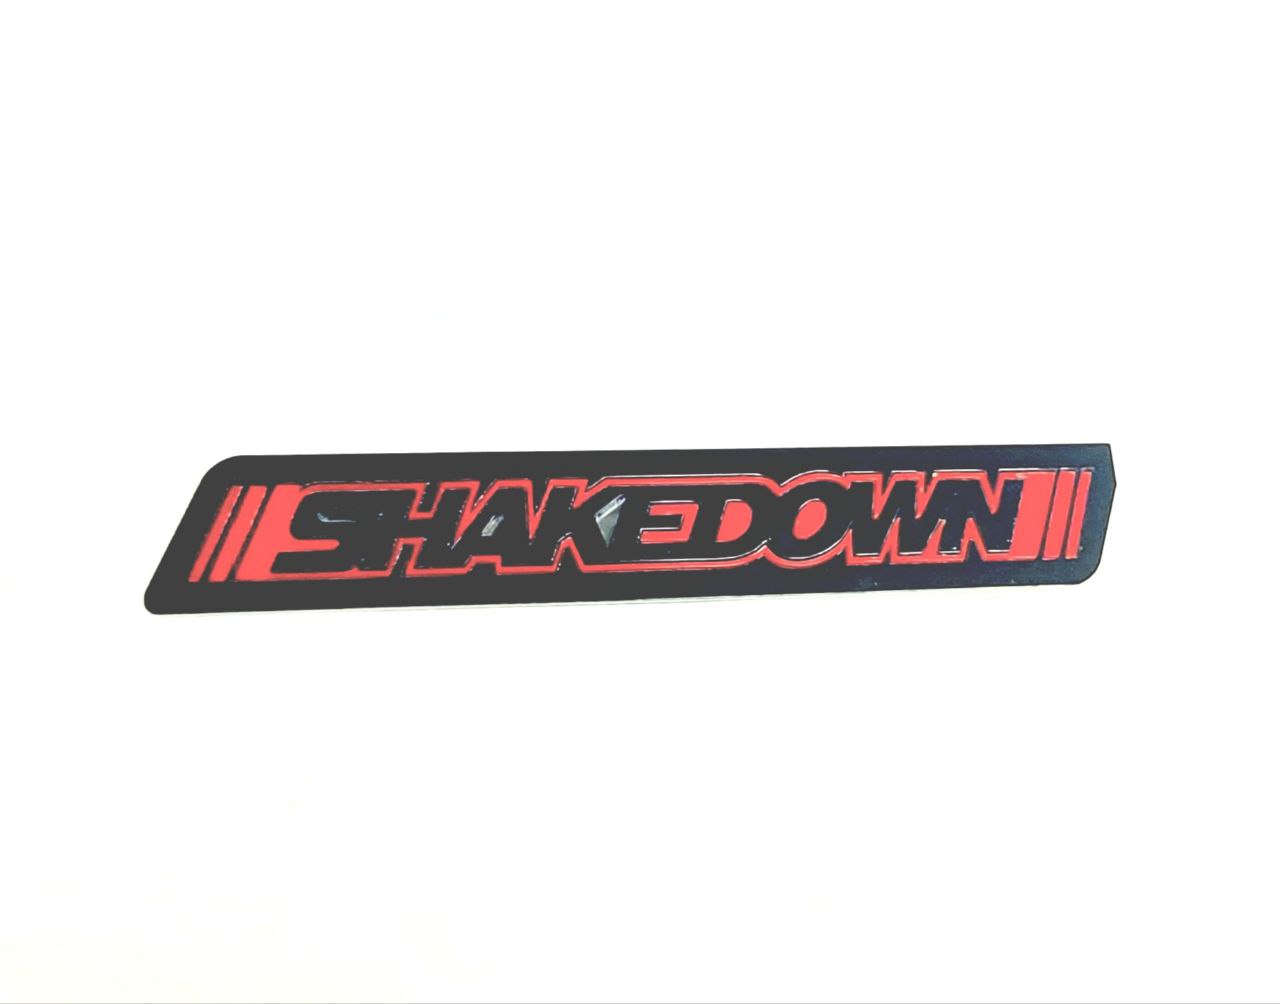 DODGE Radiator grille emblem with SHAKEDOWN logo - decoinfabric